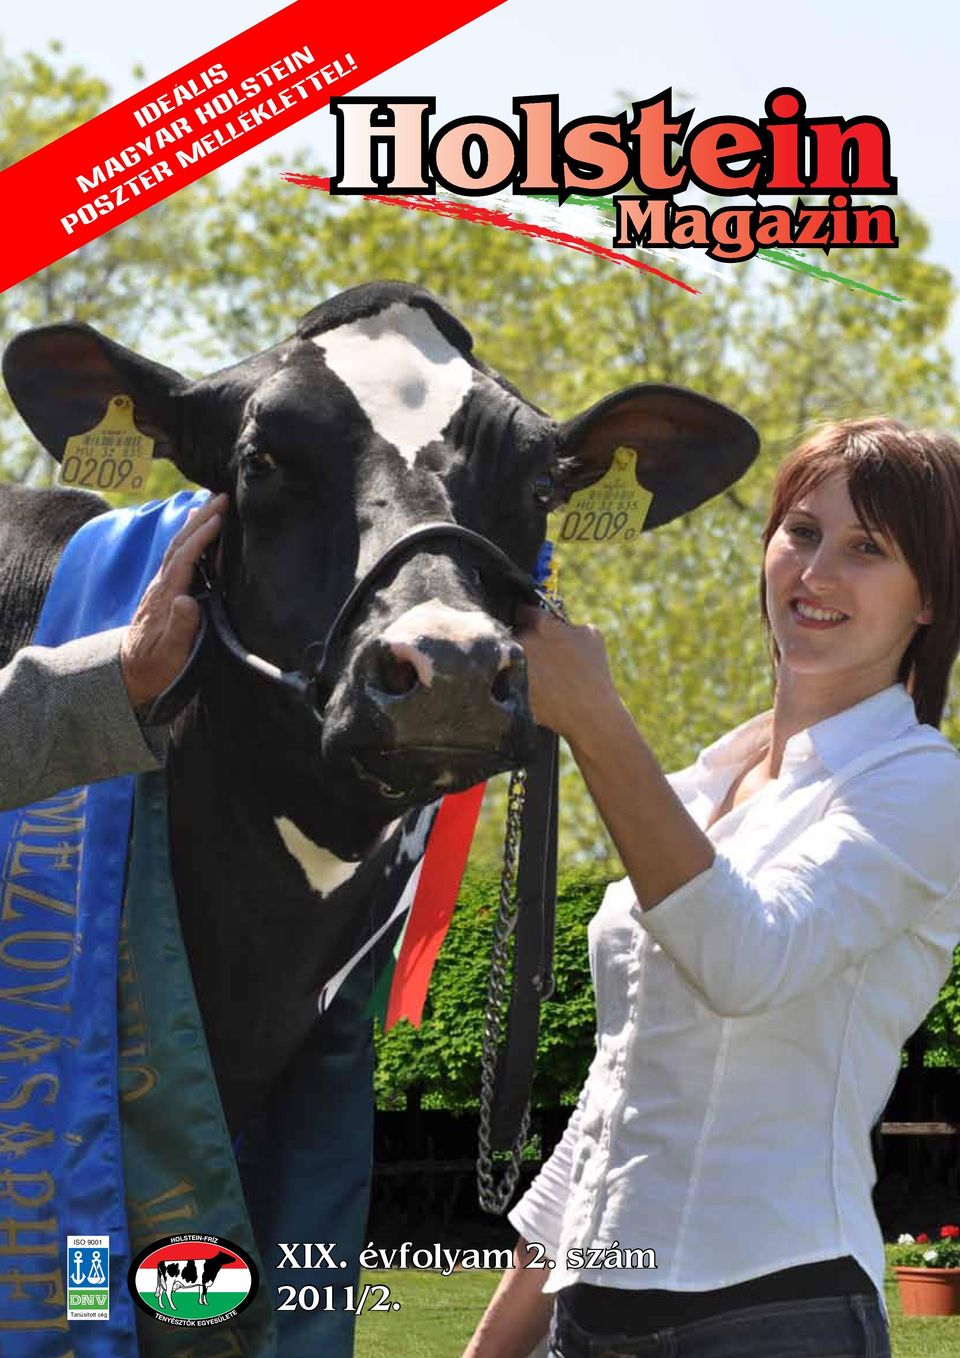 Holstein M agazin ISO 9001 2011/2 www.